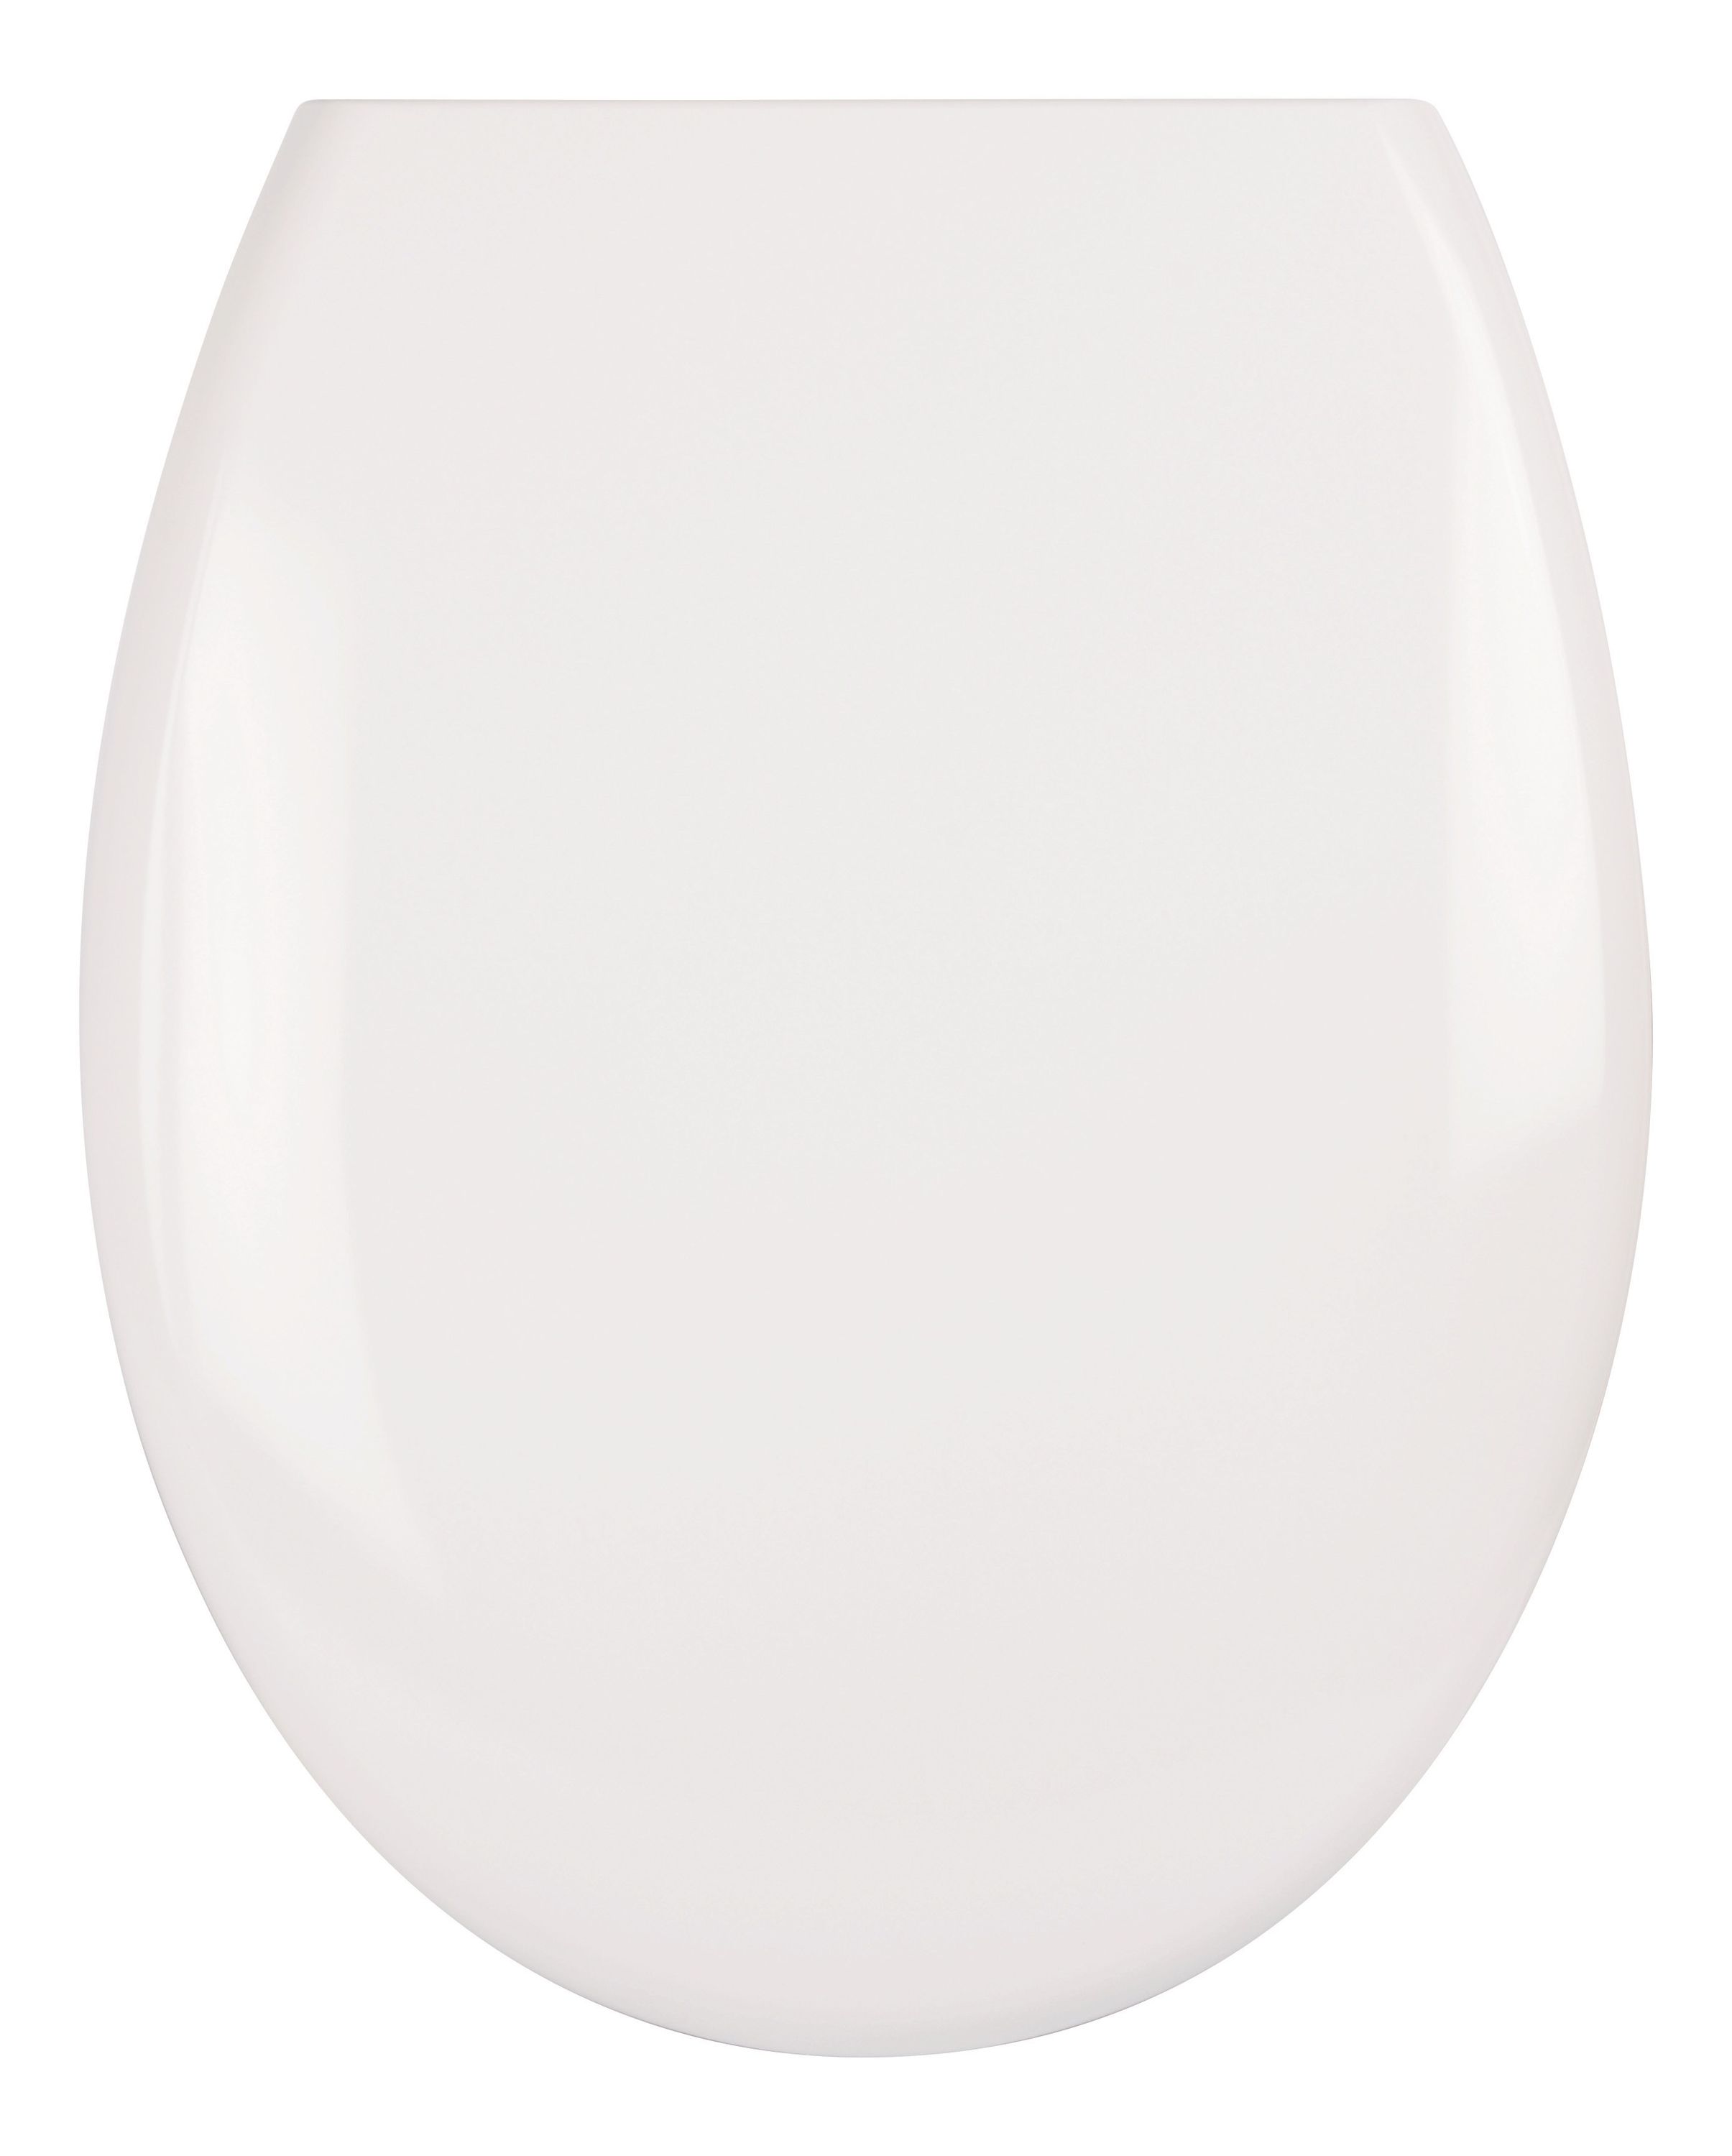 WC-Sitz mit Absenkautomatik Curved in Weiß, abnehmbar, antibakterielle Oberfläche aus Duroplast